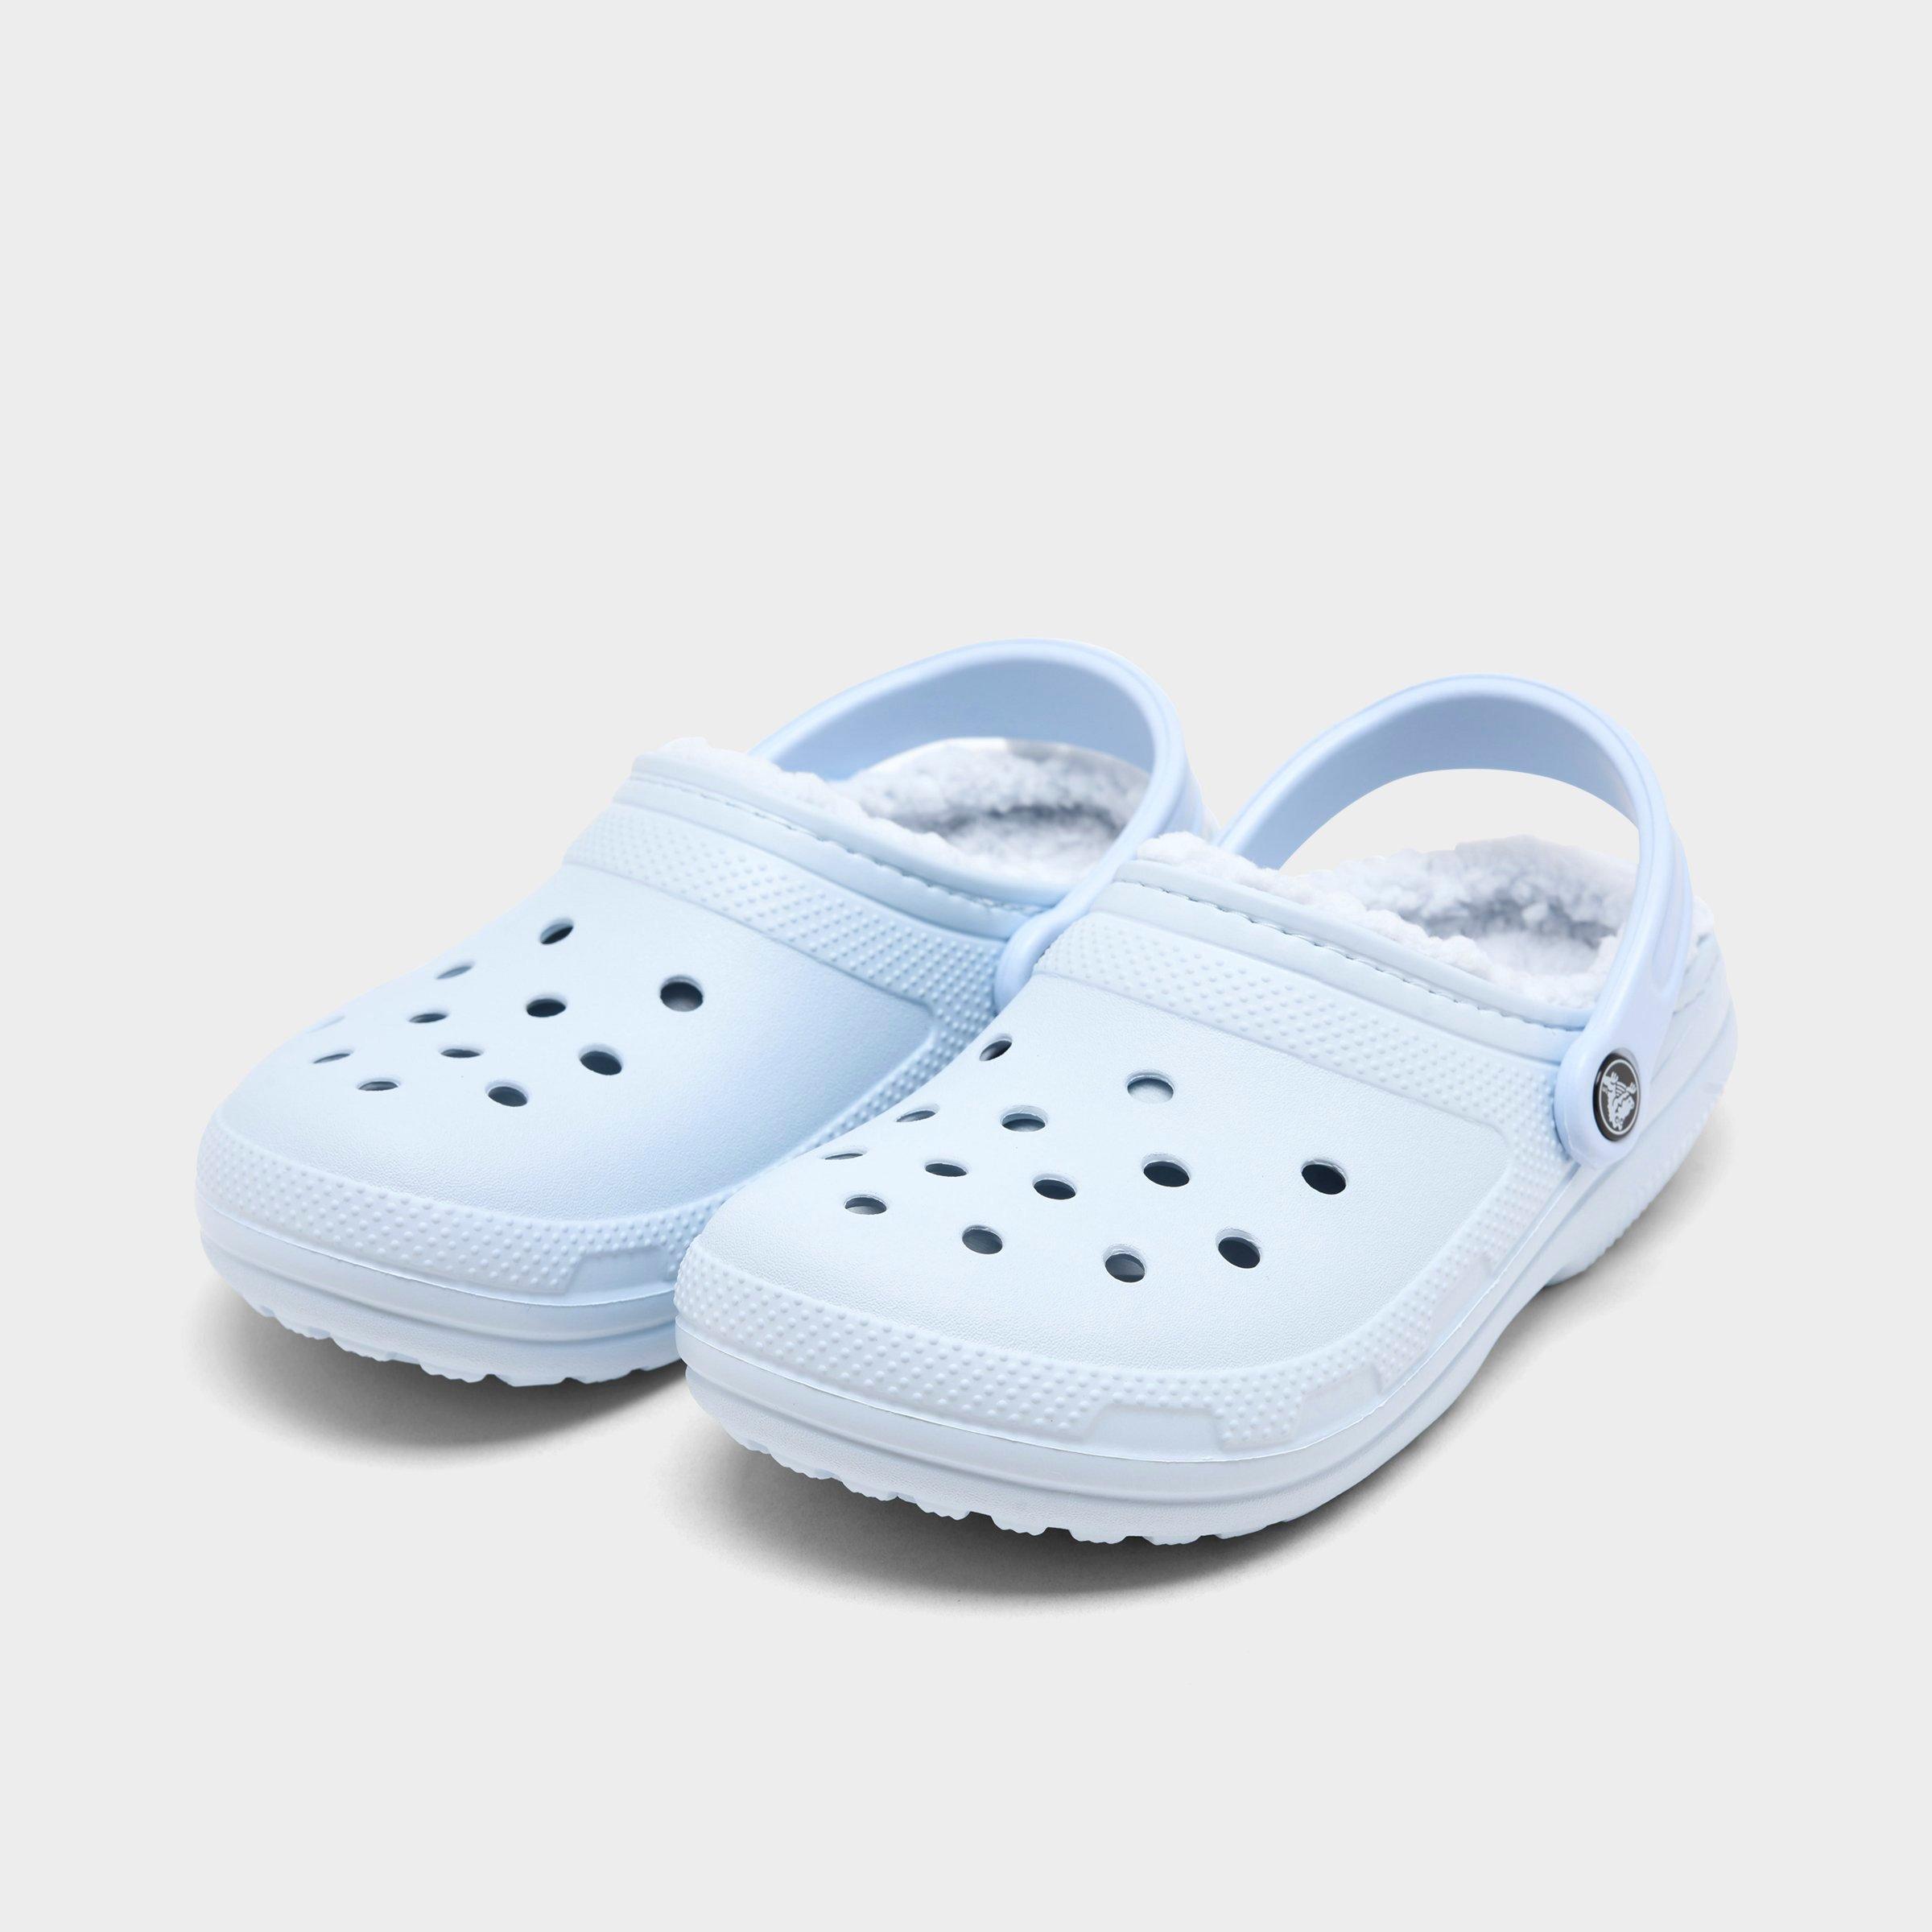 Crocs Classic Lined Clog Shoes| JD Sports